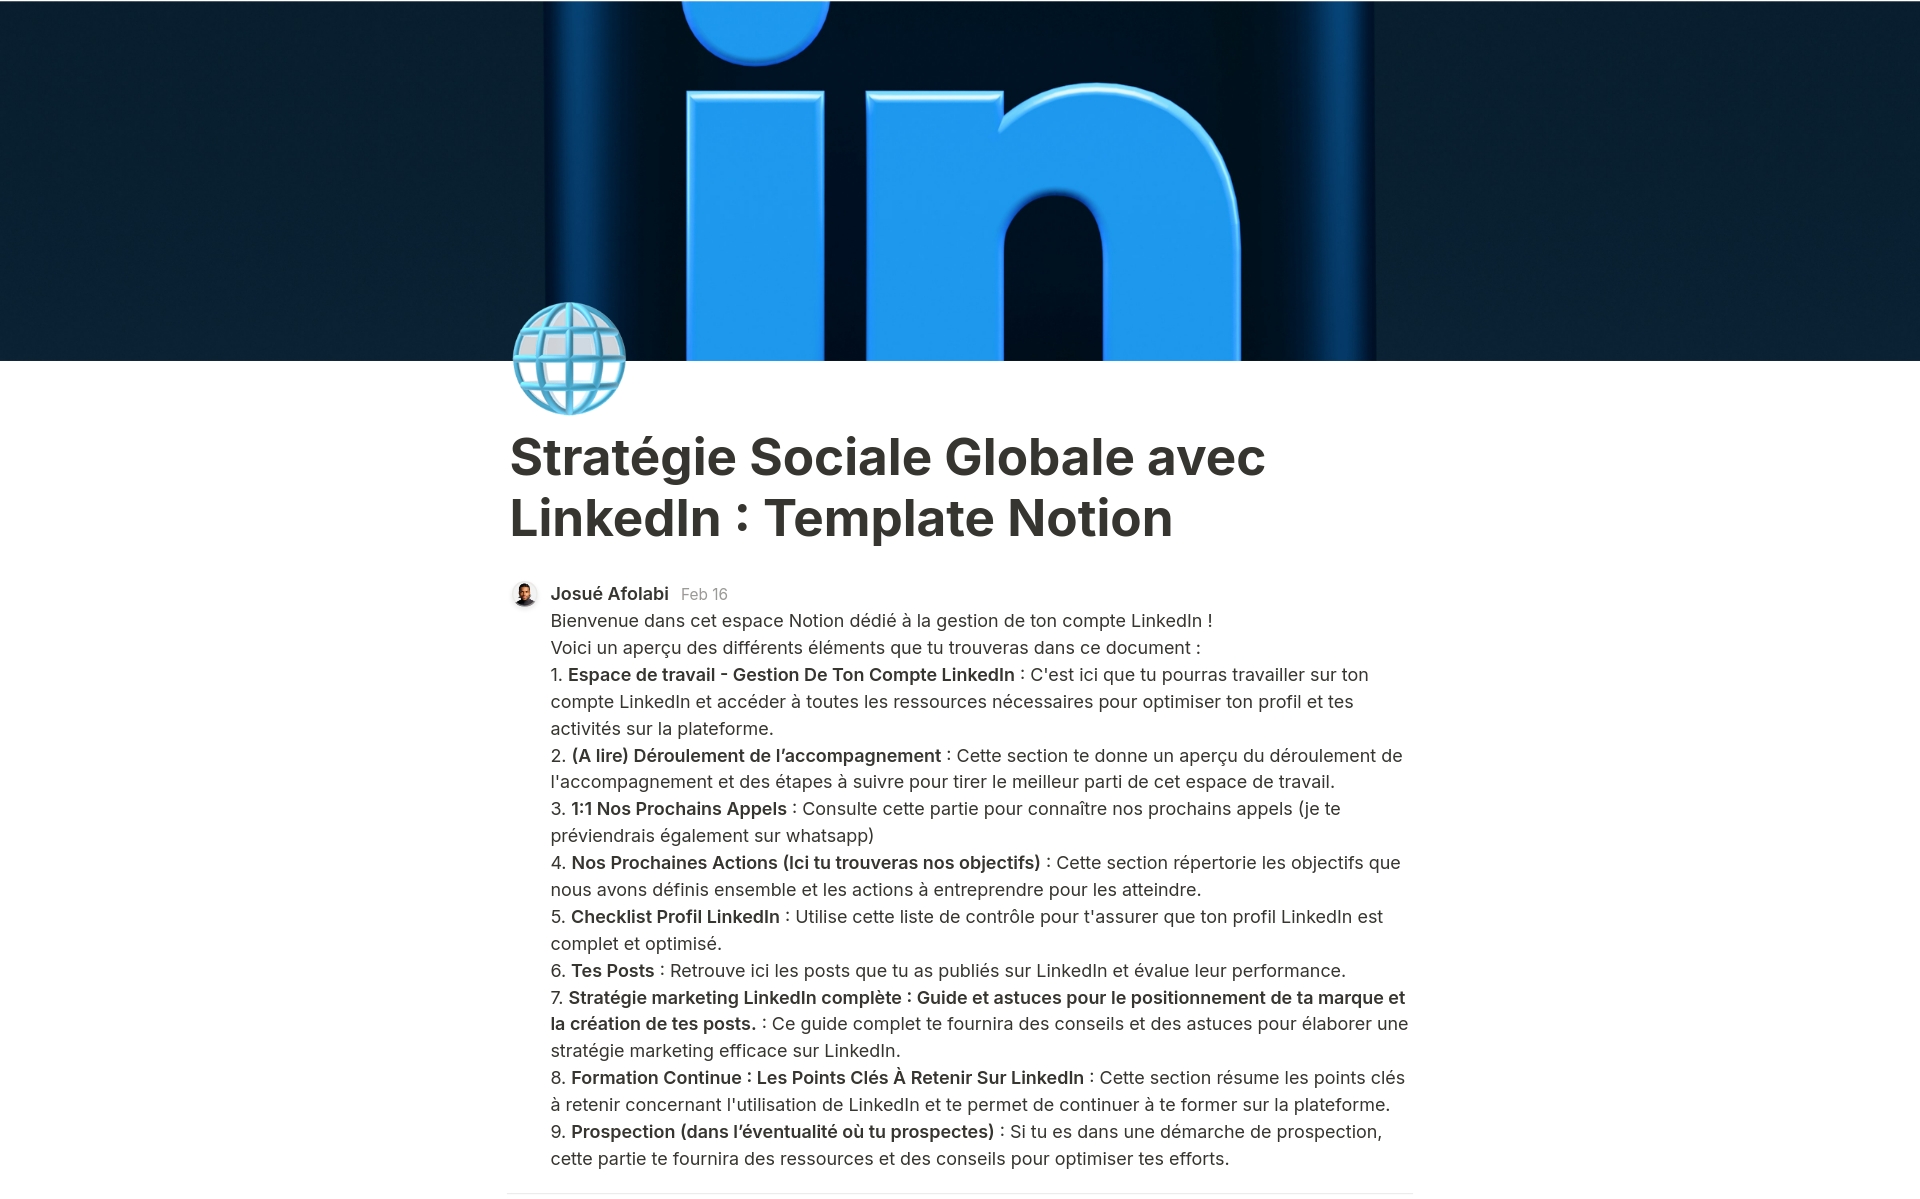 En forhåndsvisning av mal for Stratégie Sociale Globale avec LinkedIn 